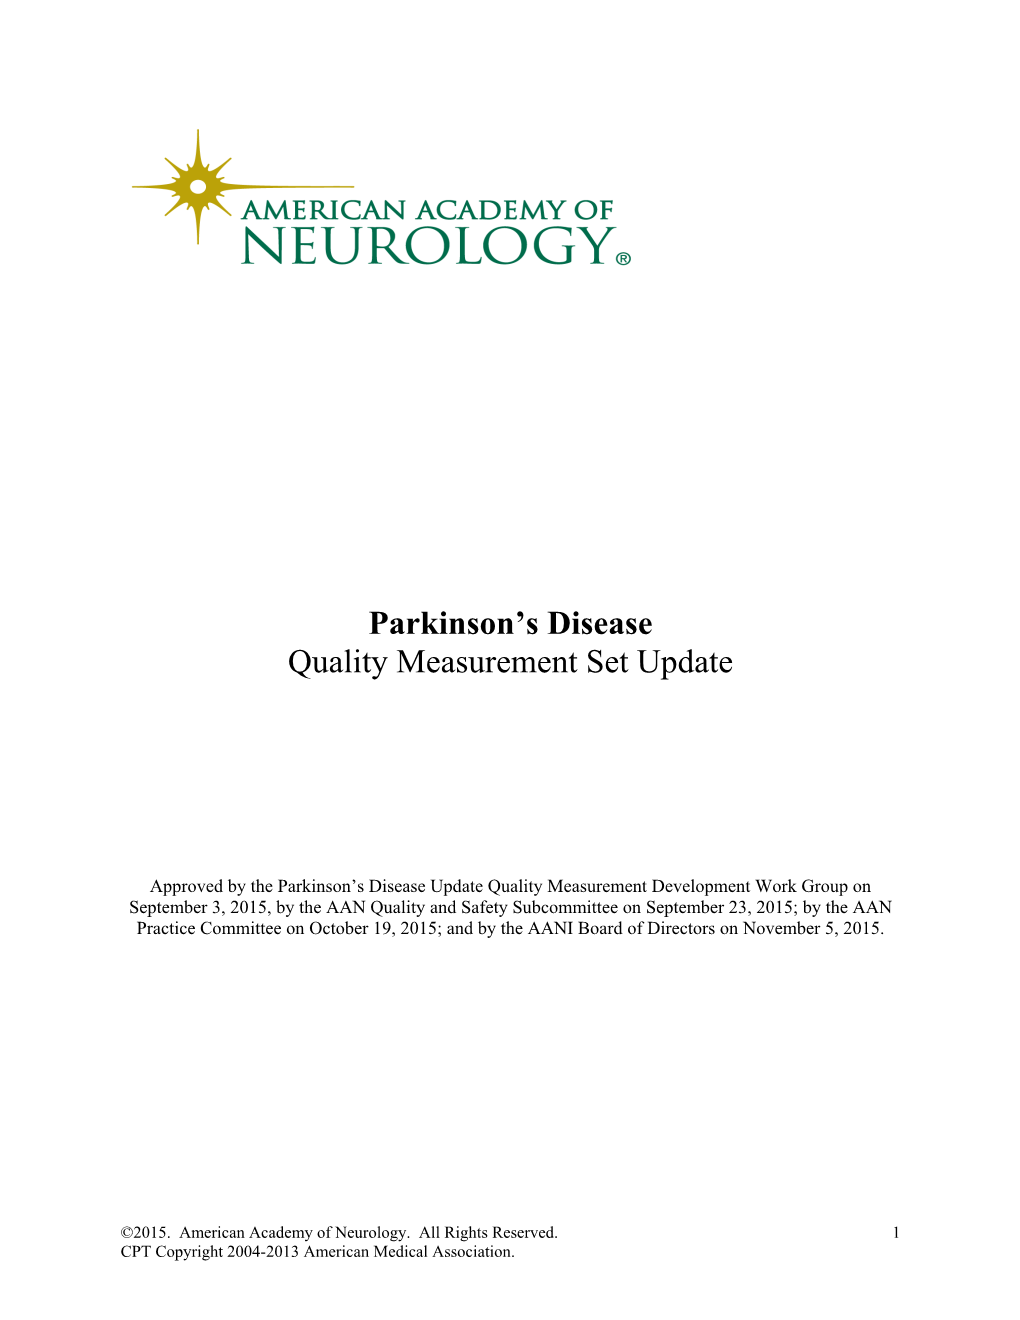 Parkinson's Disease Quality Measurement Set Update